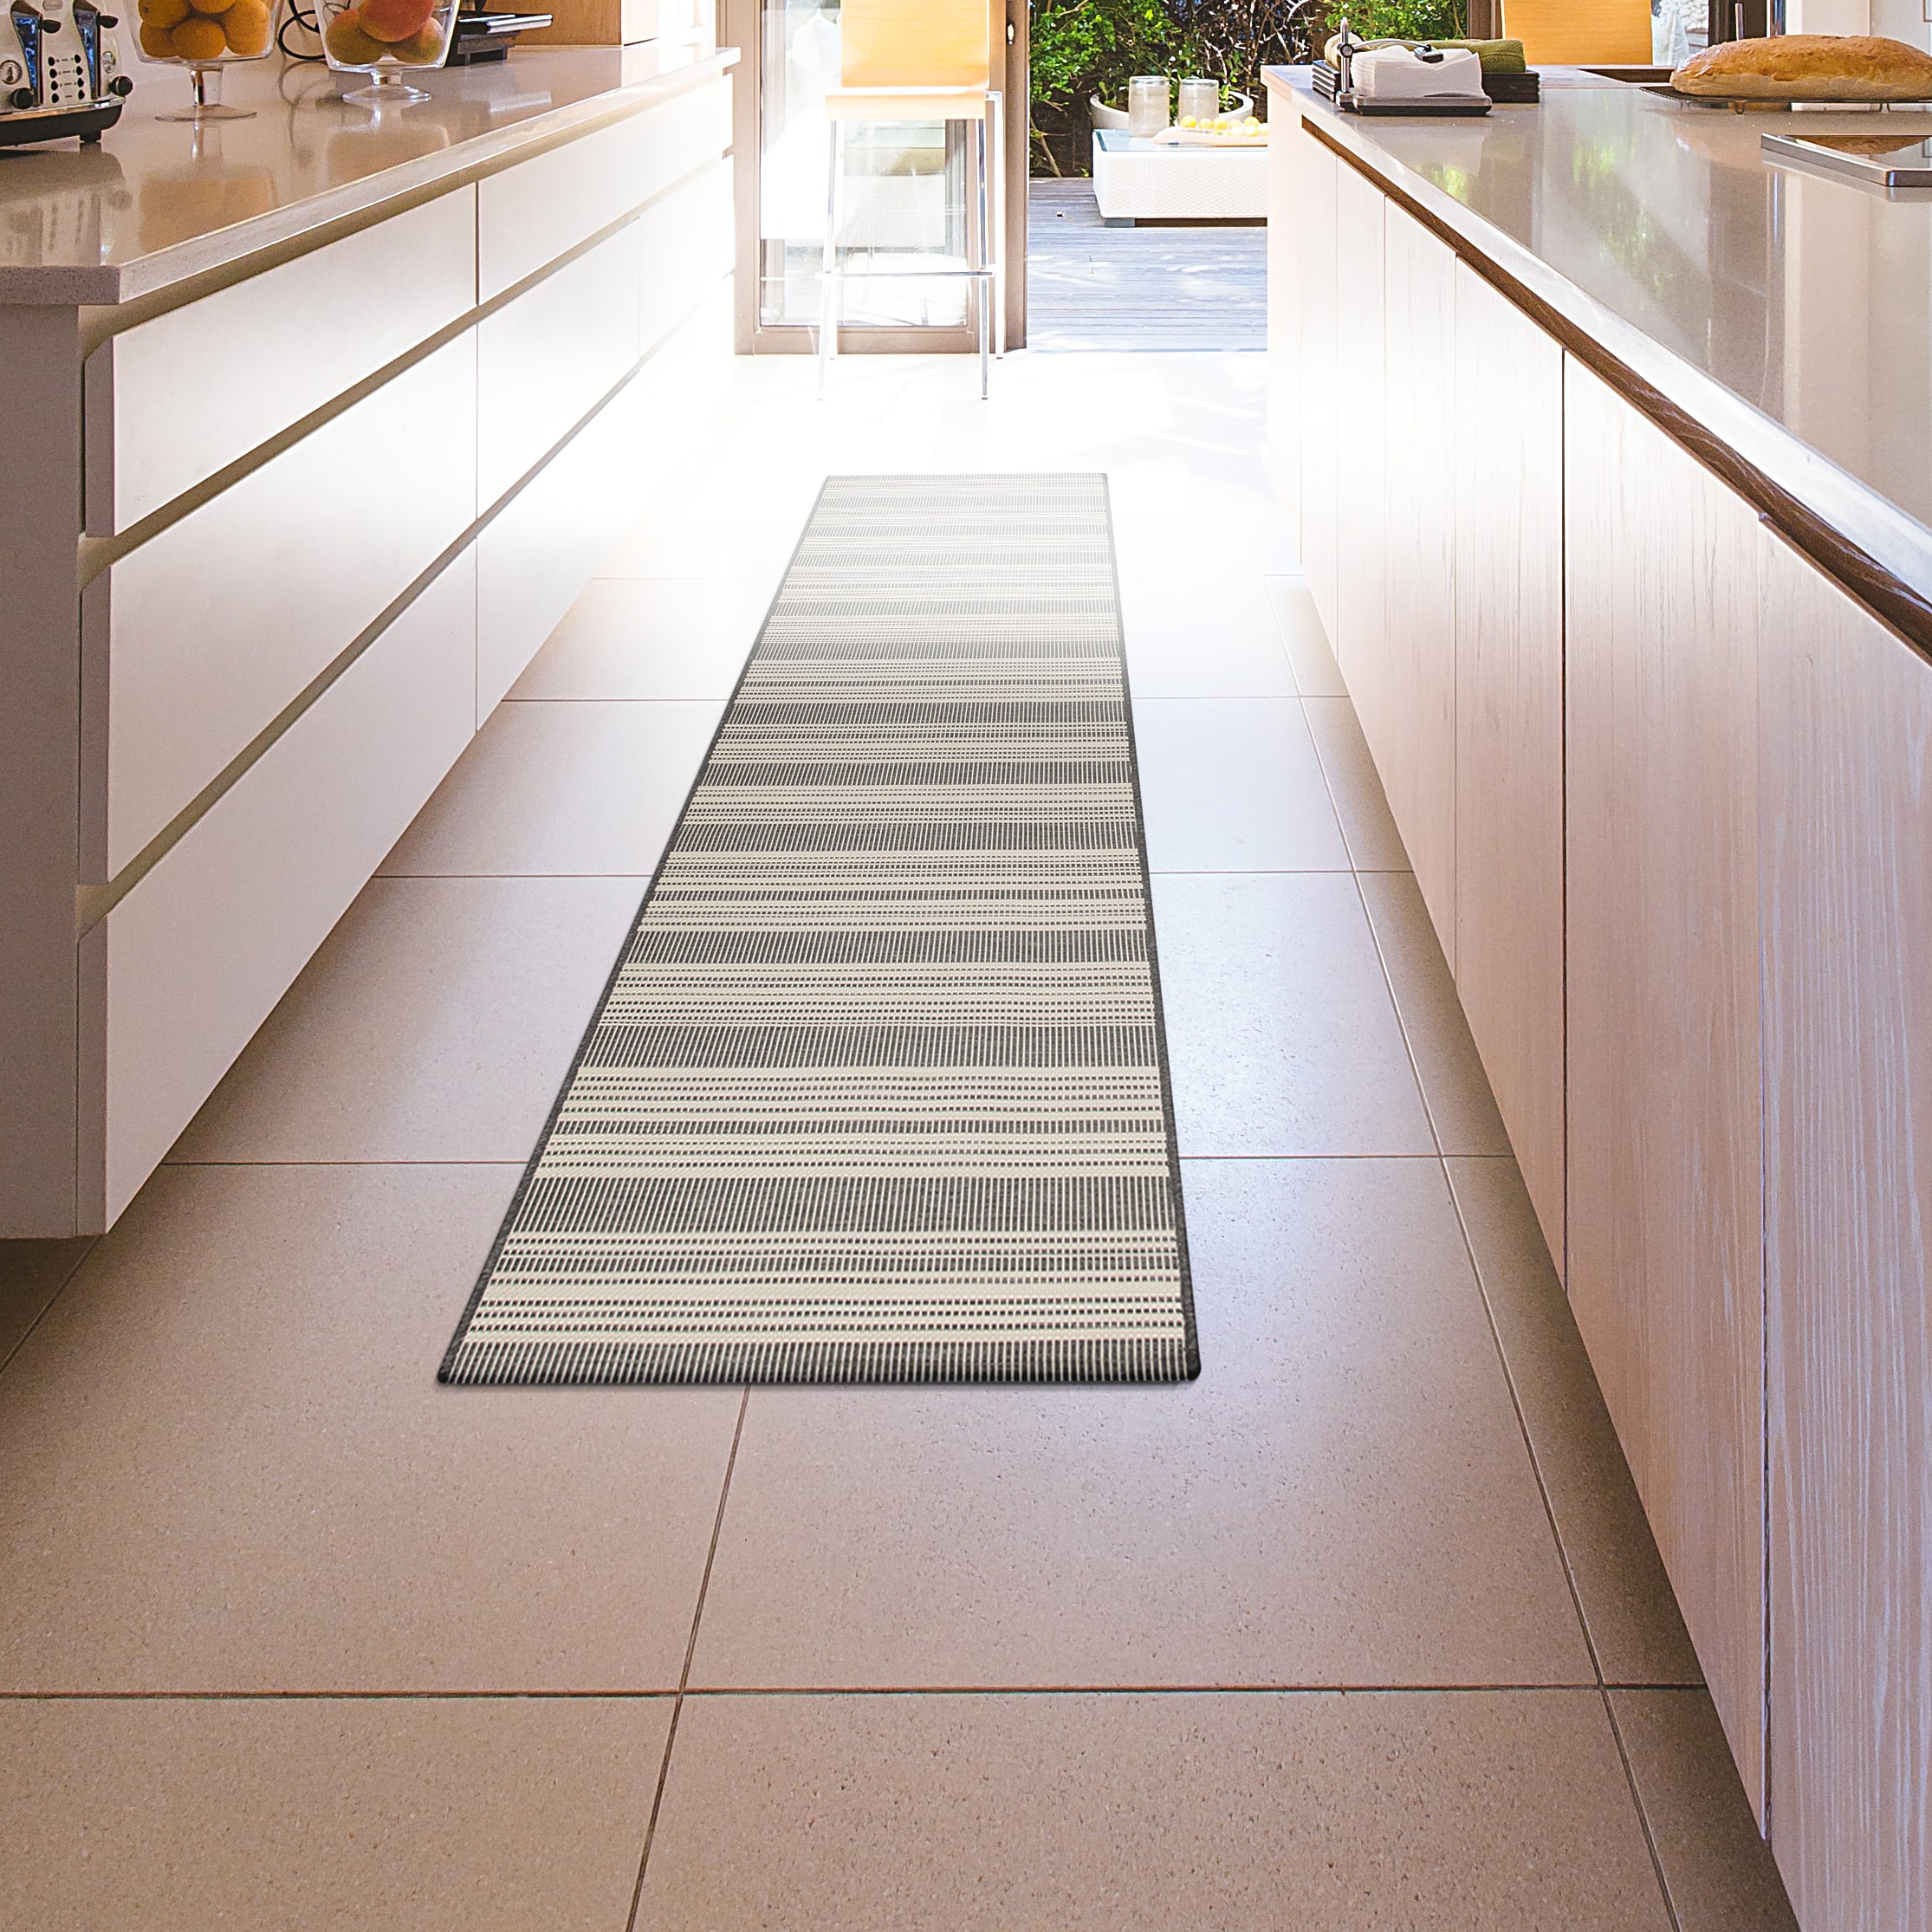 GelPro Flatweave Anti-Fatigue Kitchen Floor Mat, 20-in x 40-in, Dark Gray 